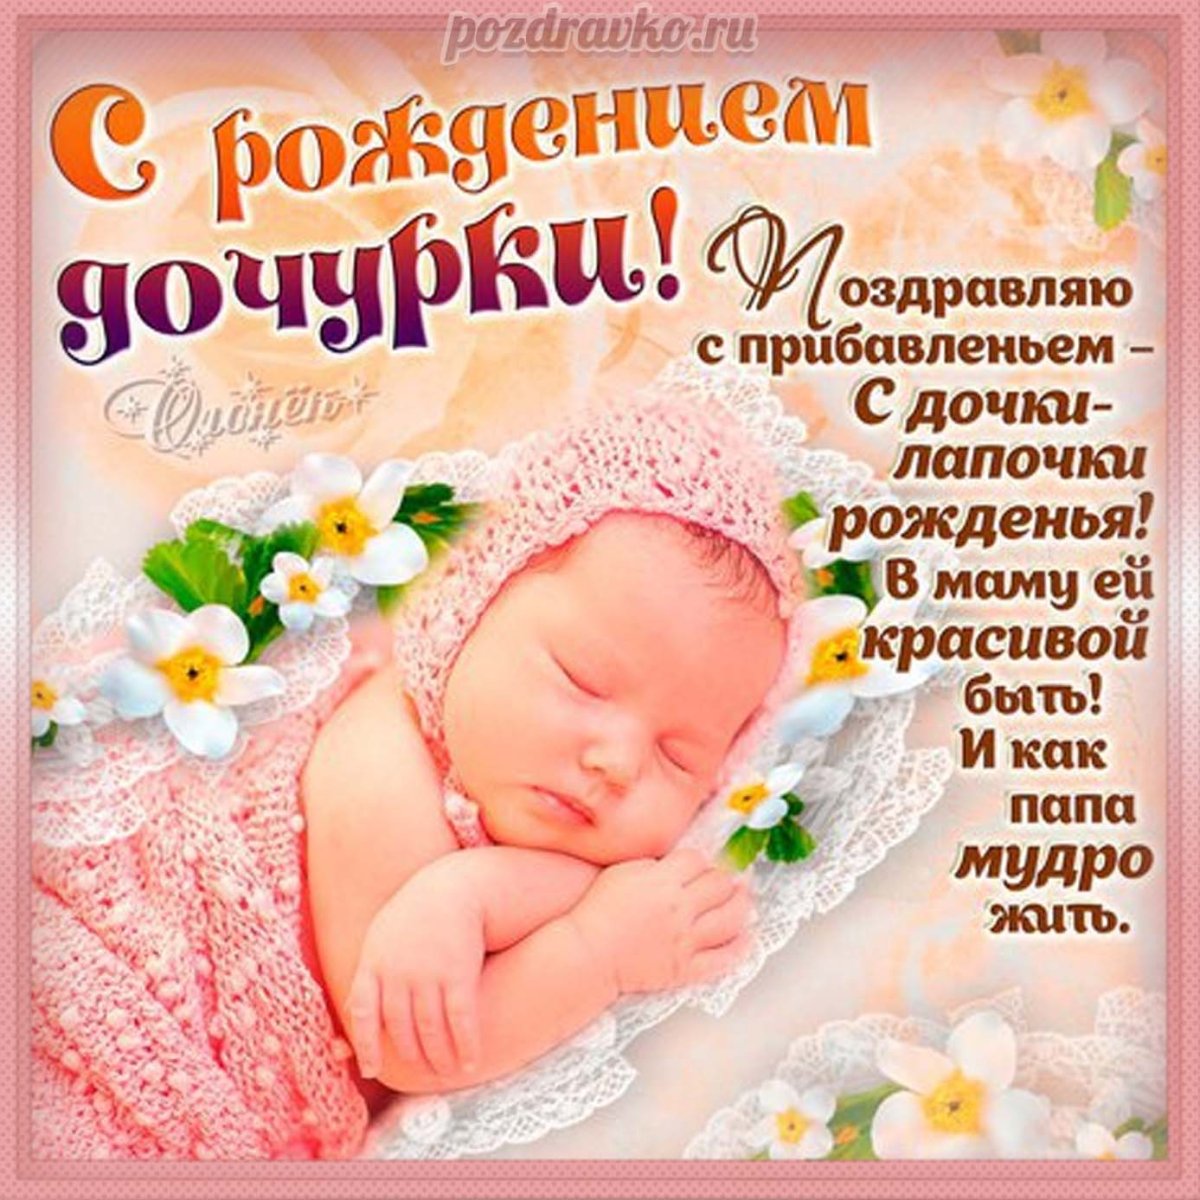 Картинки с новорожденным